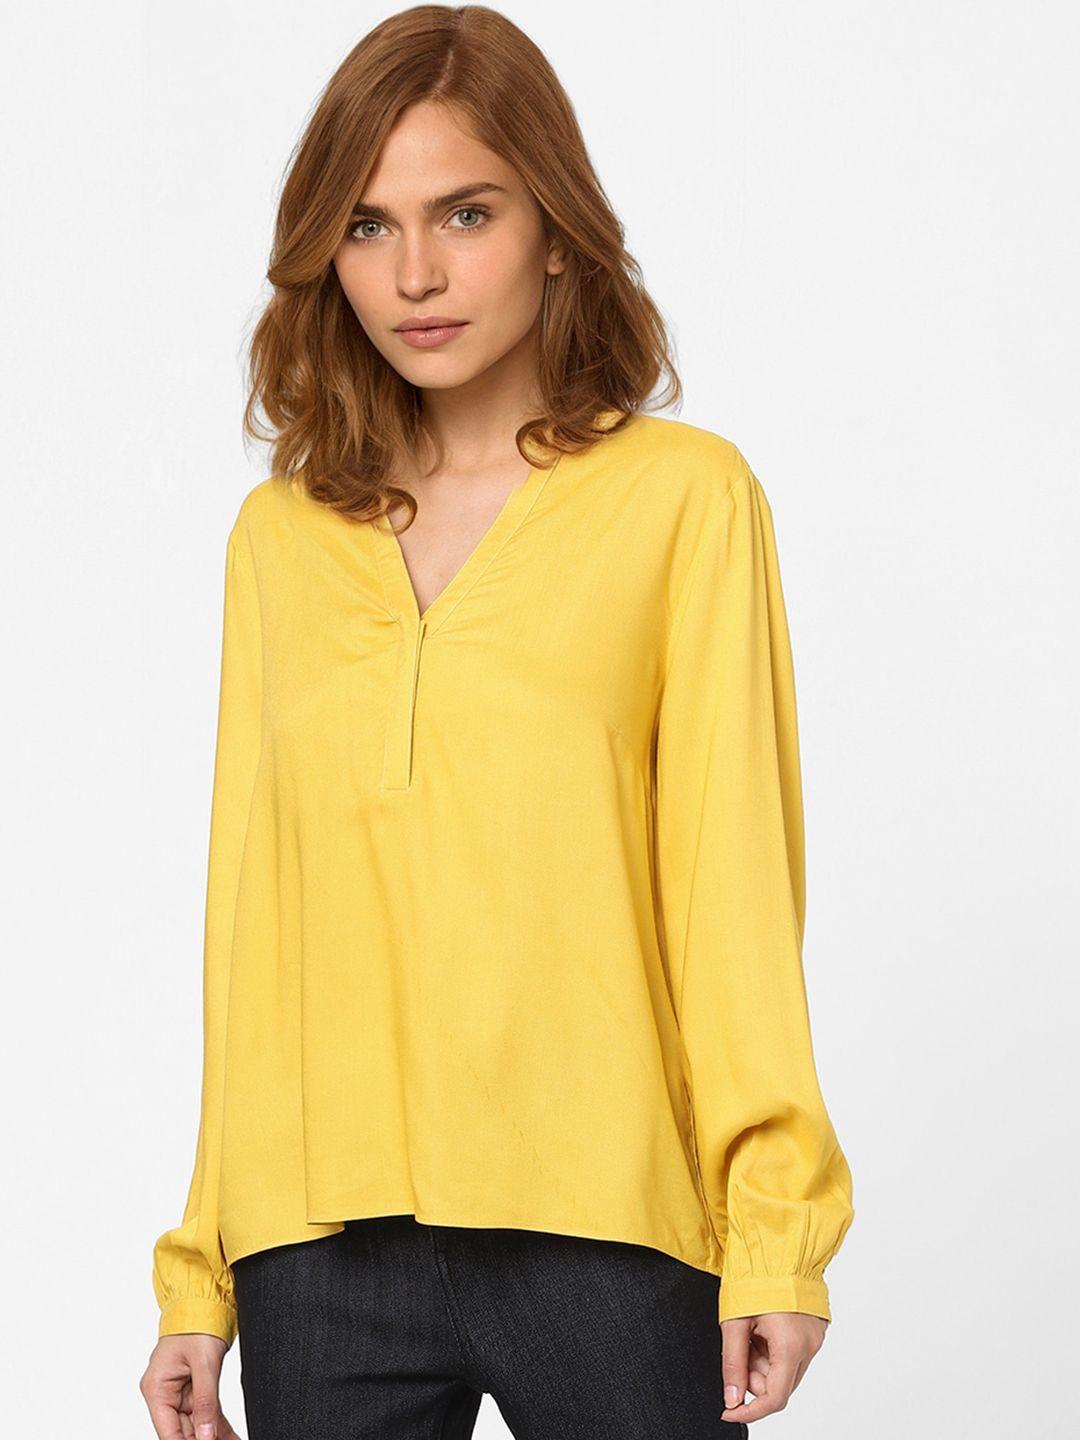 vero-moda-women-yellow-mandarin-collar-top